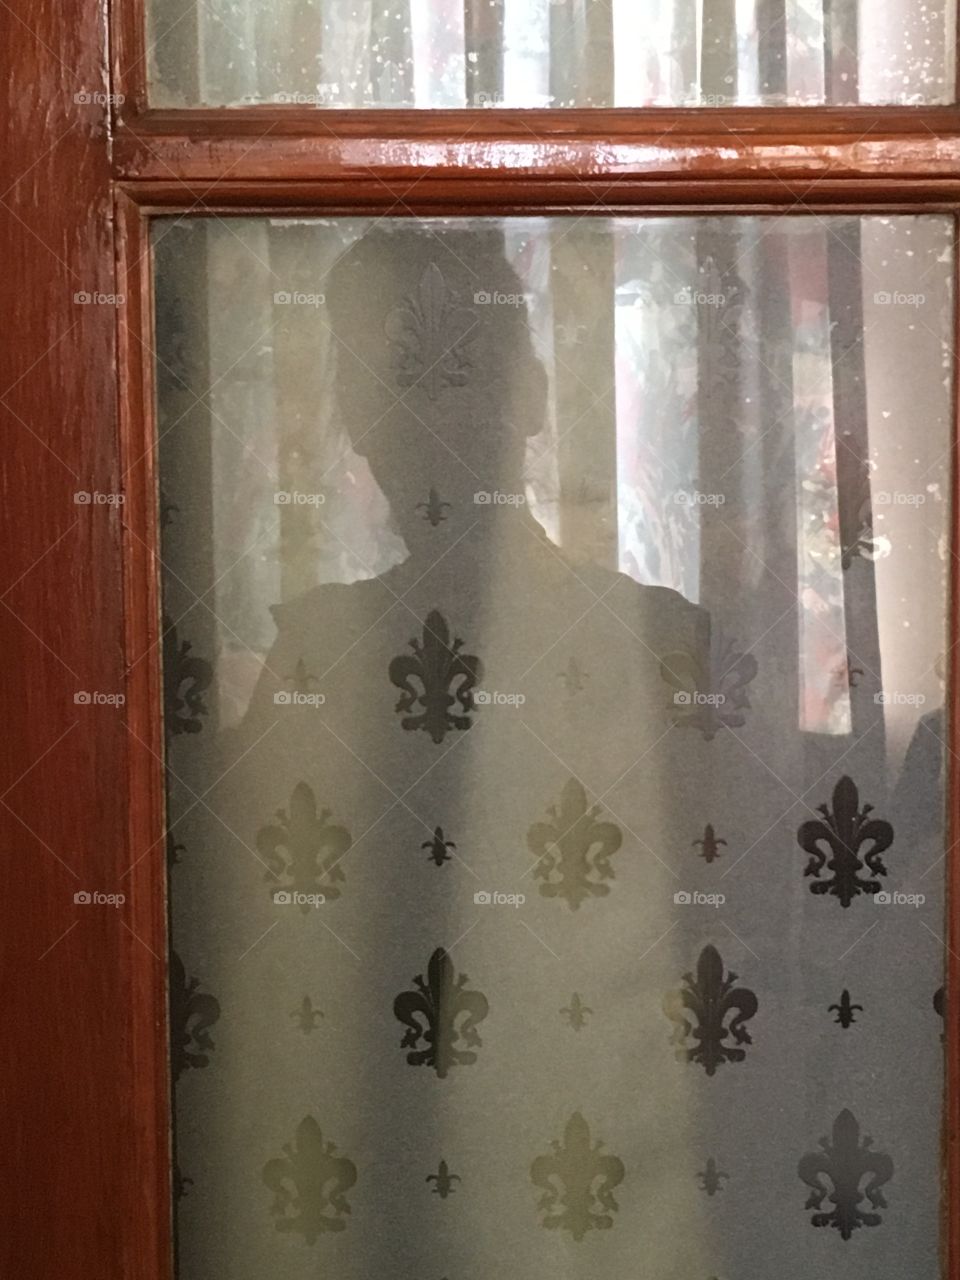 Reflection of woman captured in glass window pane of door